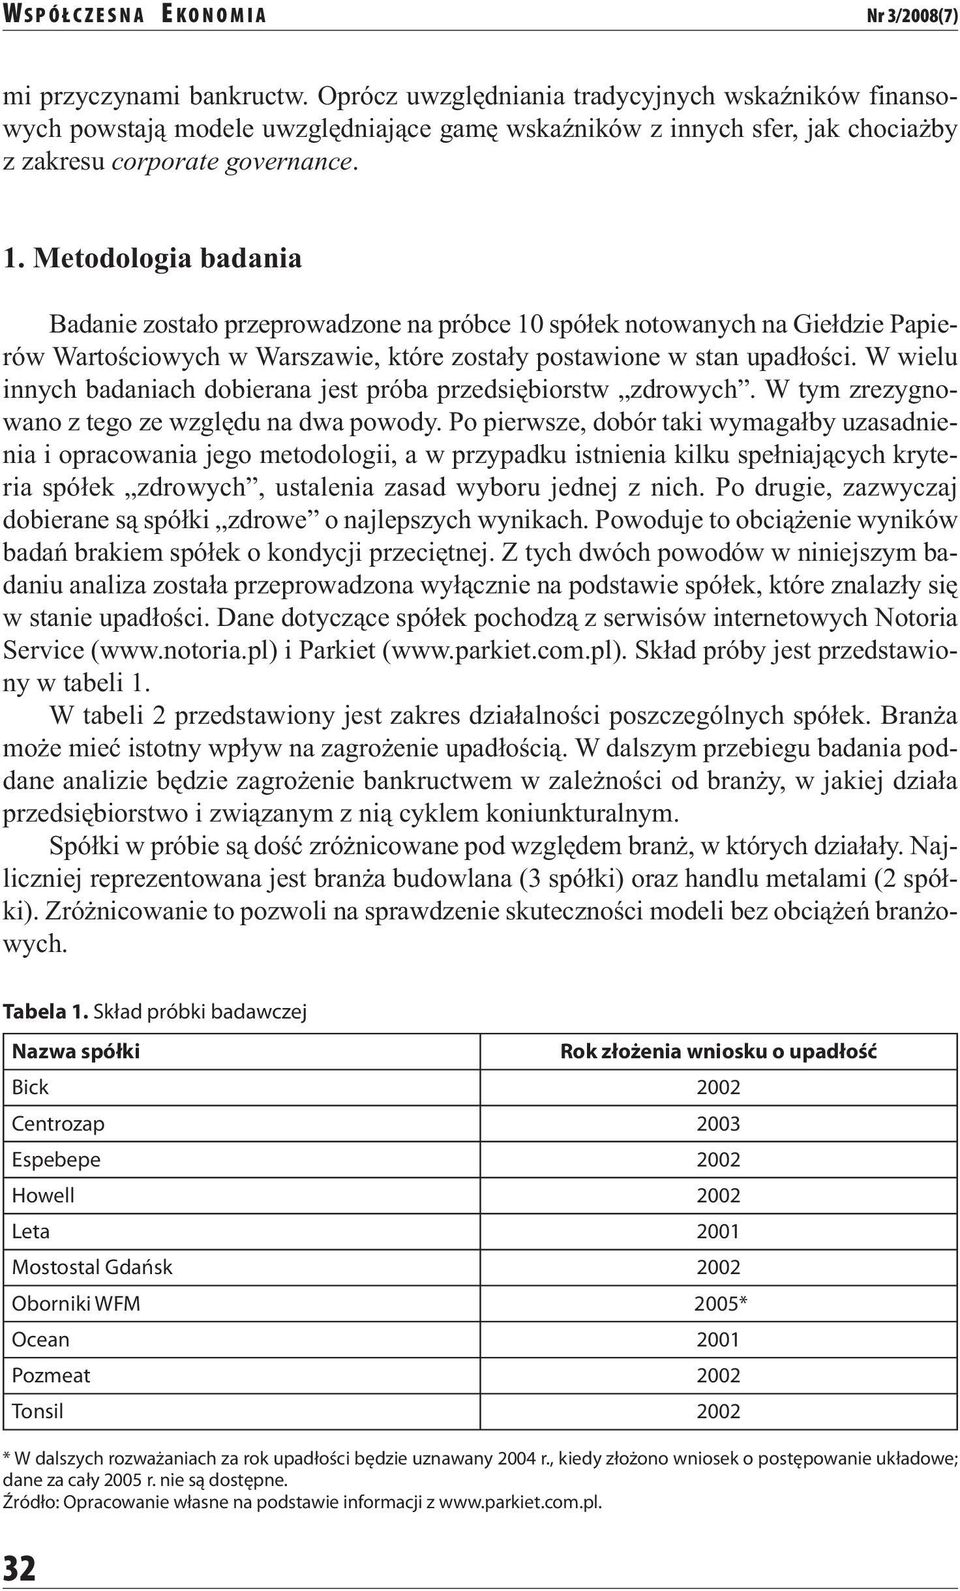 Metodologia badania Badanie zostało przeprowadzone na próbce 10 spółek notowanych na Giełdzie Papierów Wartościowych w Warszawie, które zostały postawione w stan upadłości.